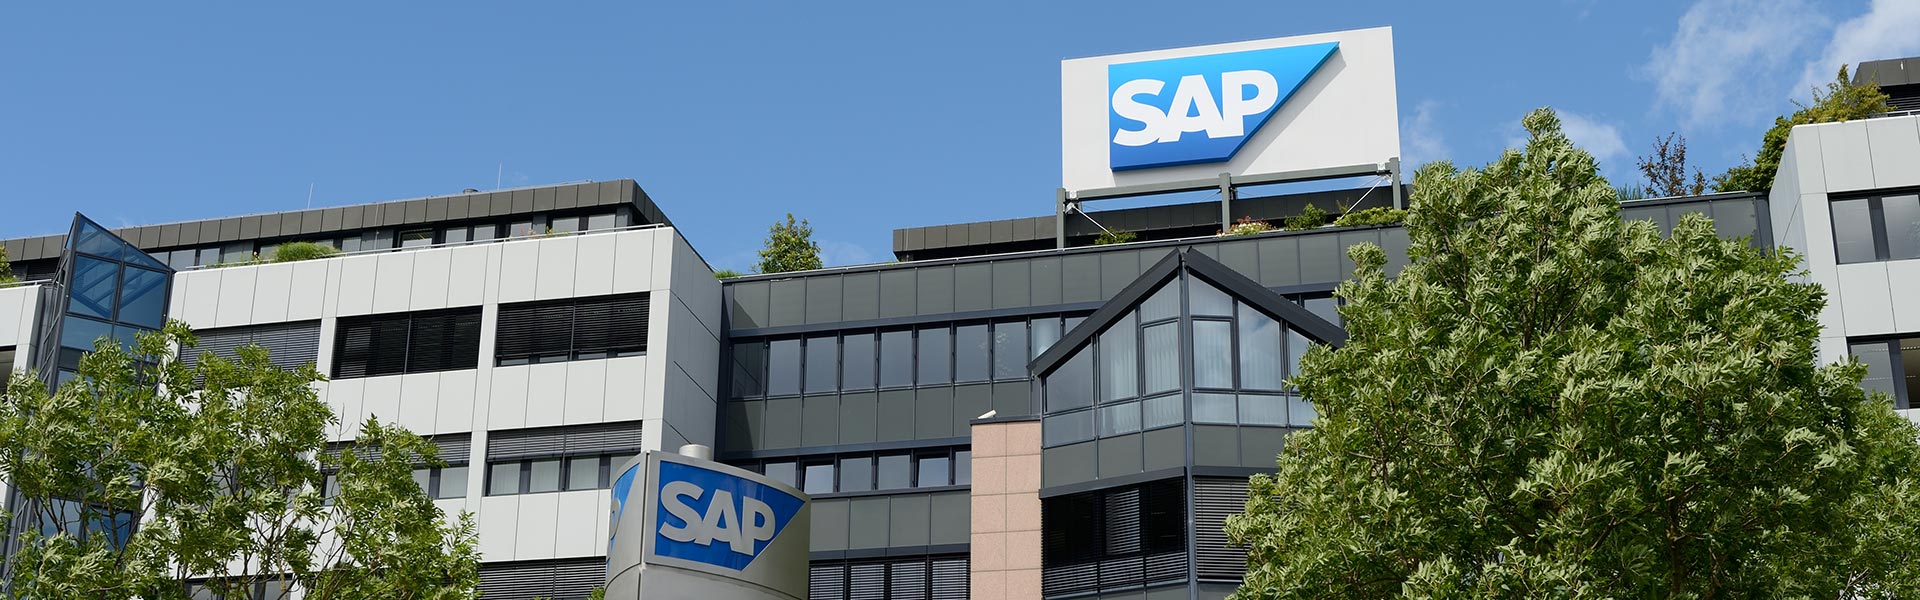 SAP offre agli sviluppatori strumenti low-code/no-code e migliora la SAP® Business Technology Platform